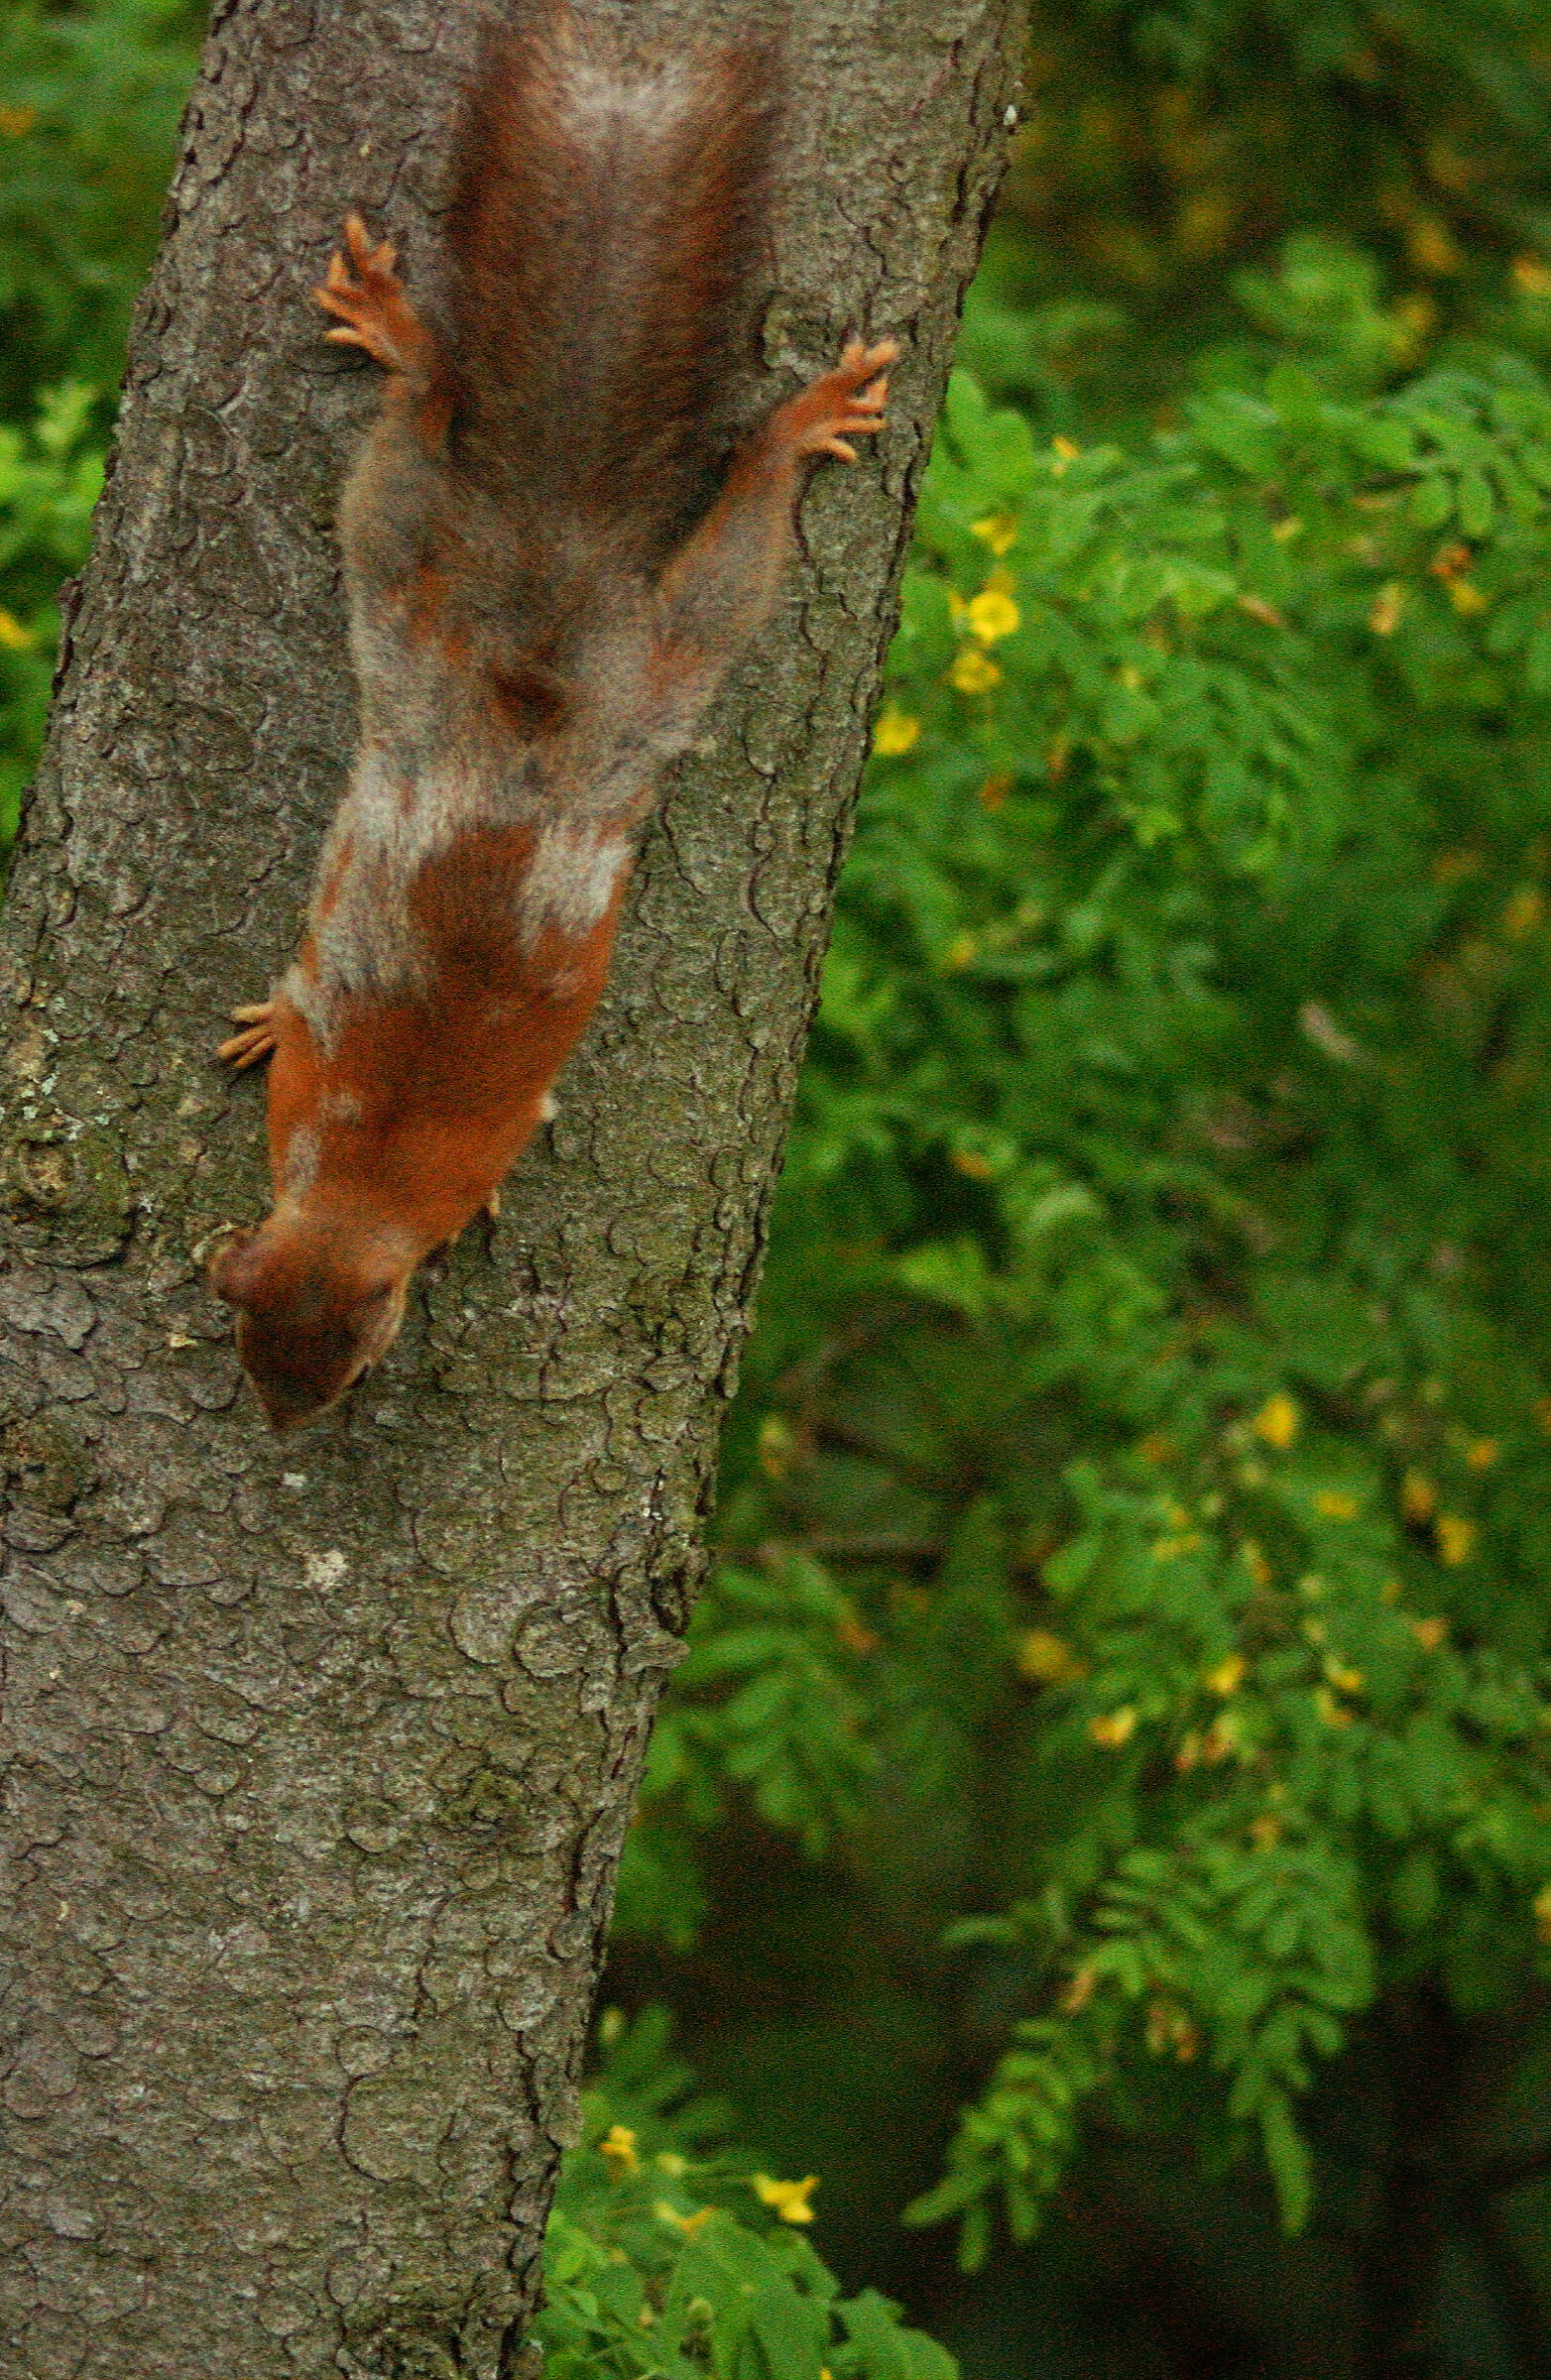 A 'half-season' squirrel...